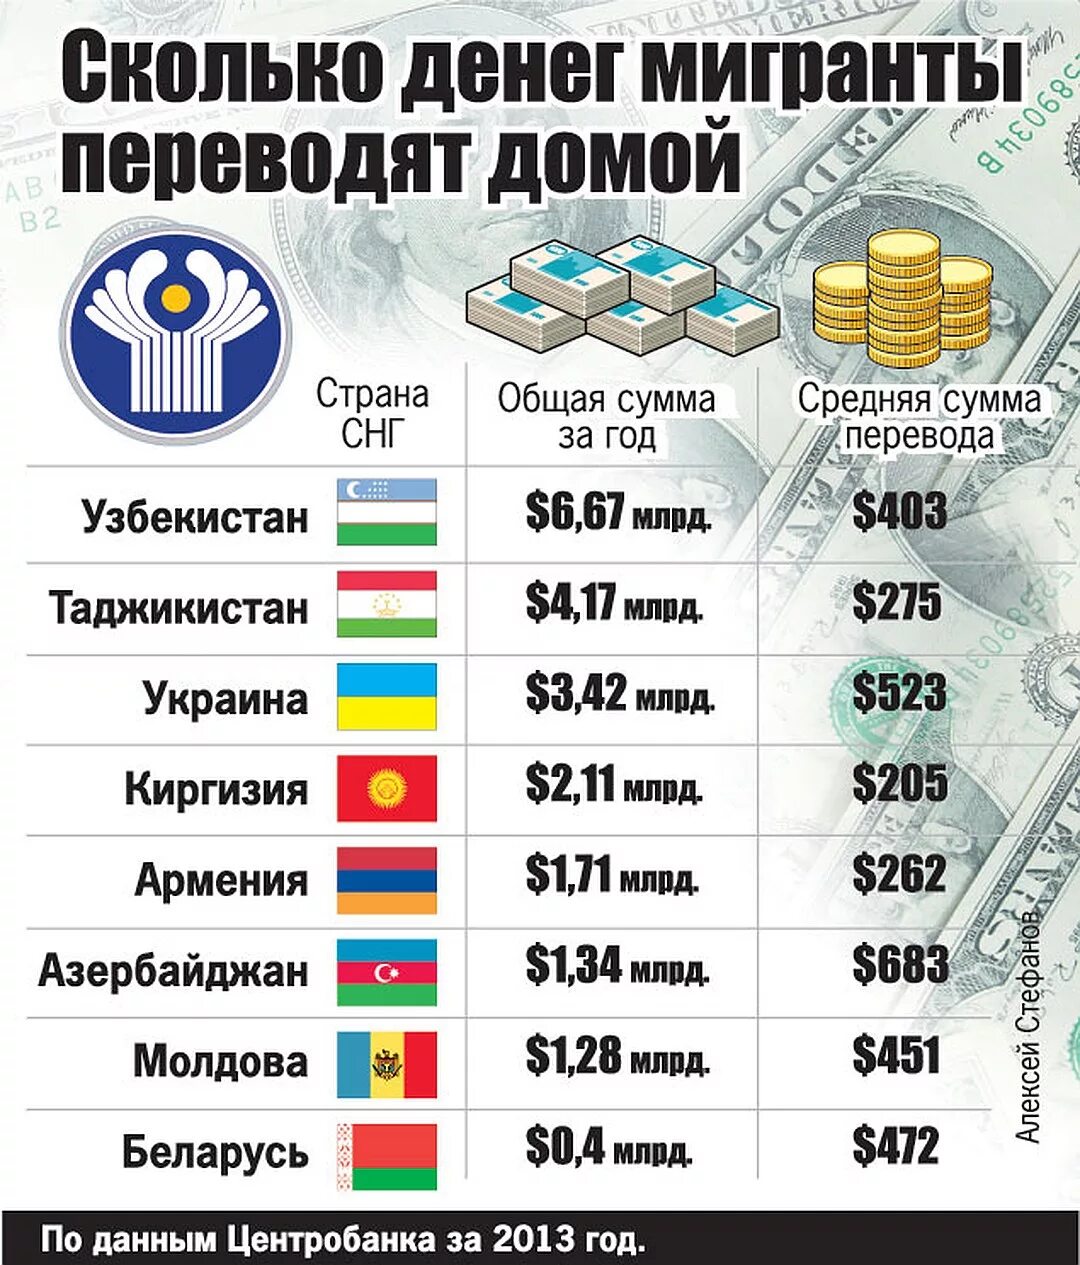 Сколько тысяч живет. Количество денег в странах. Сколько денег в России. Сколько денег по странам. Сколько в Росси денеиг.